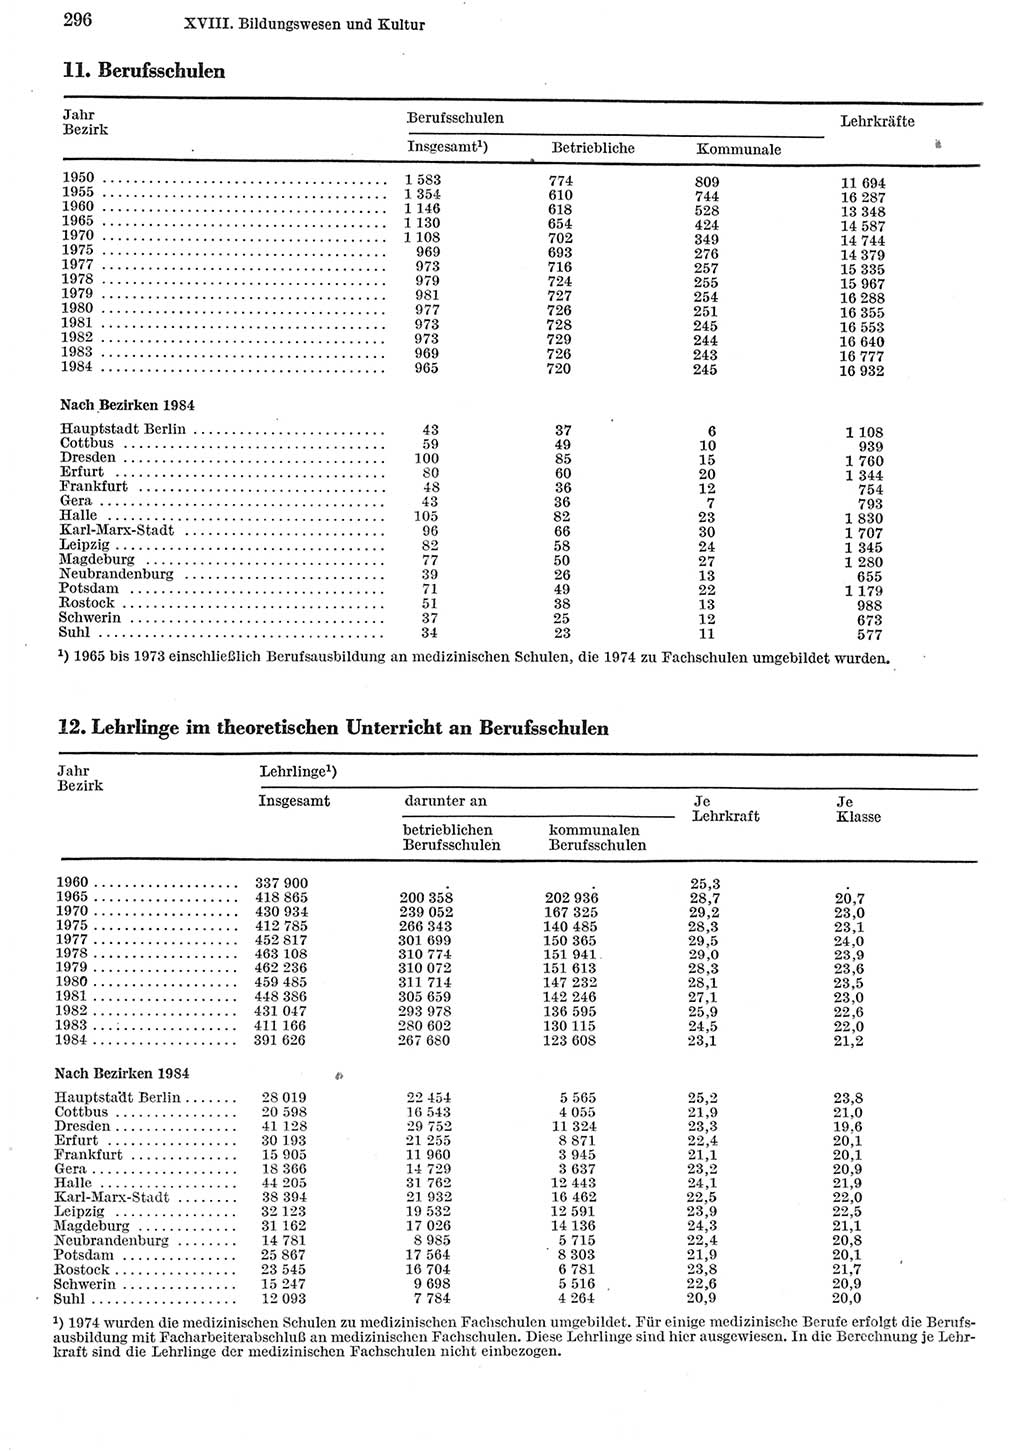 Statistisches Jahrbuch der Deutschen Demokratischen Republik (DDR) 1985, Seite 296 (Stat. Jb. DDR 1985, S. 296)